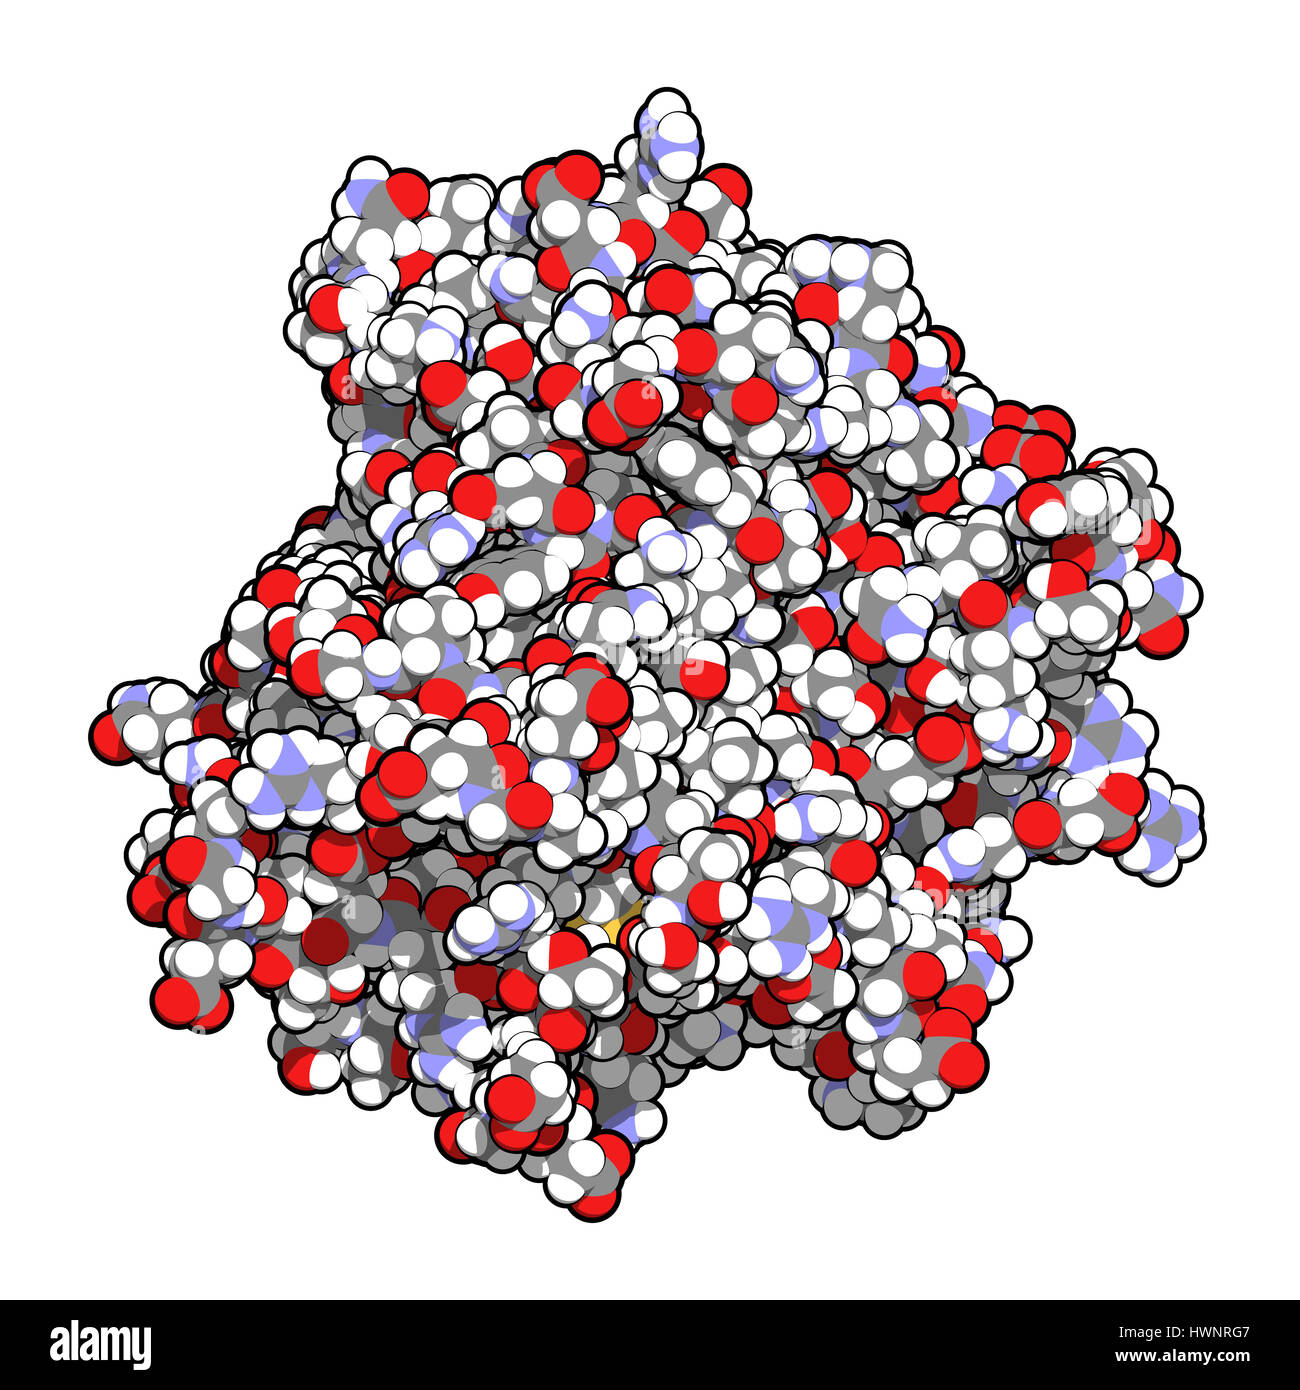 Tumor-Nekrose-Faktor alpha (TNF) Zytokin Eiweißmolekül, 3D rendering. Klinisch verwendete Inhibitoren sind Infliximab, Humira, Certolizumab und Stockfoto